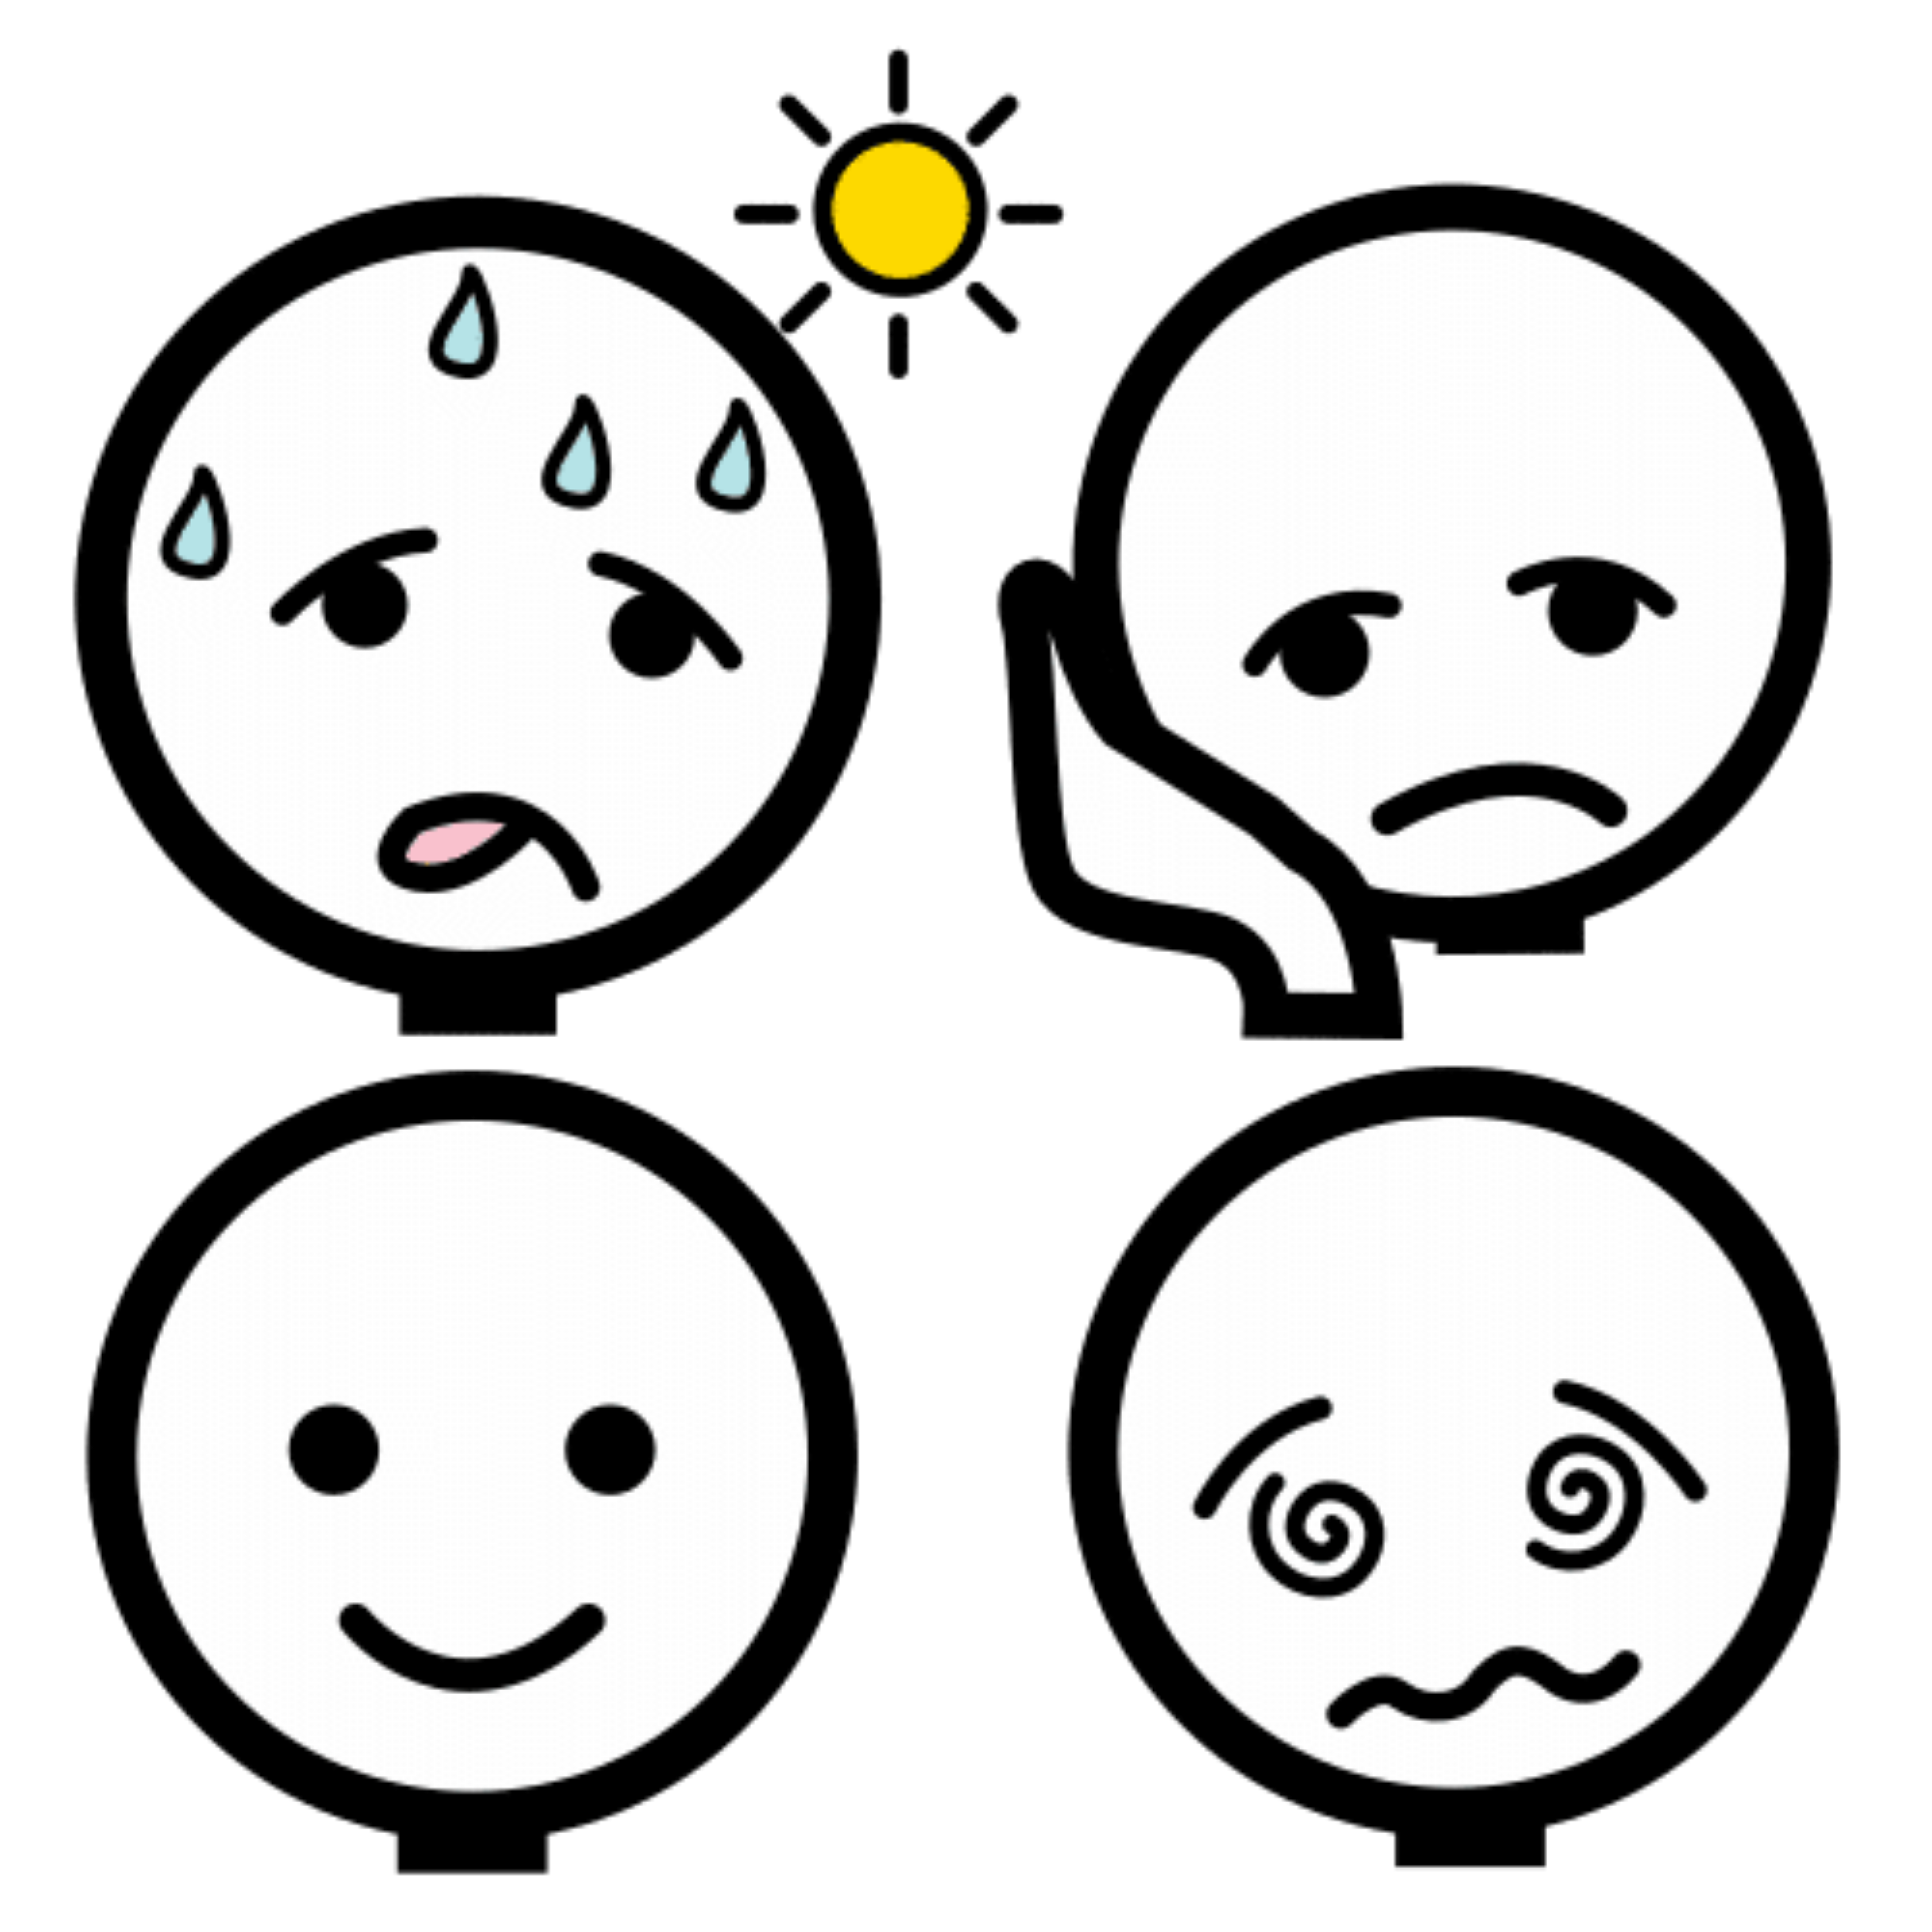 En la imagen aparecen caras mostrando diferentes emociones